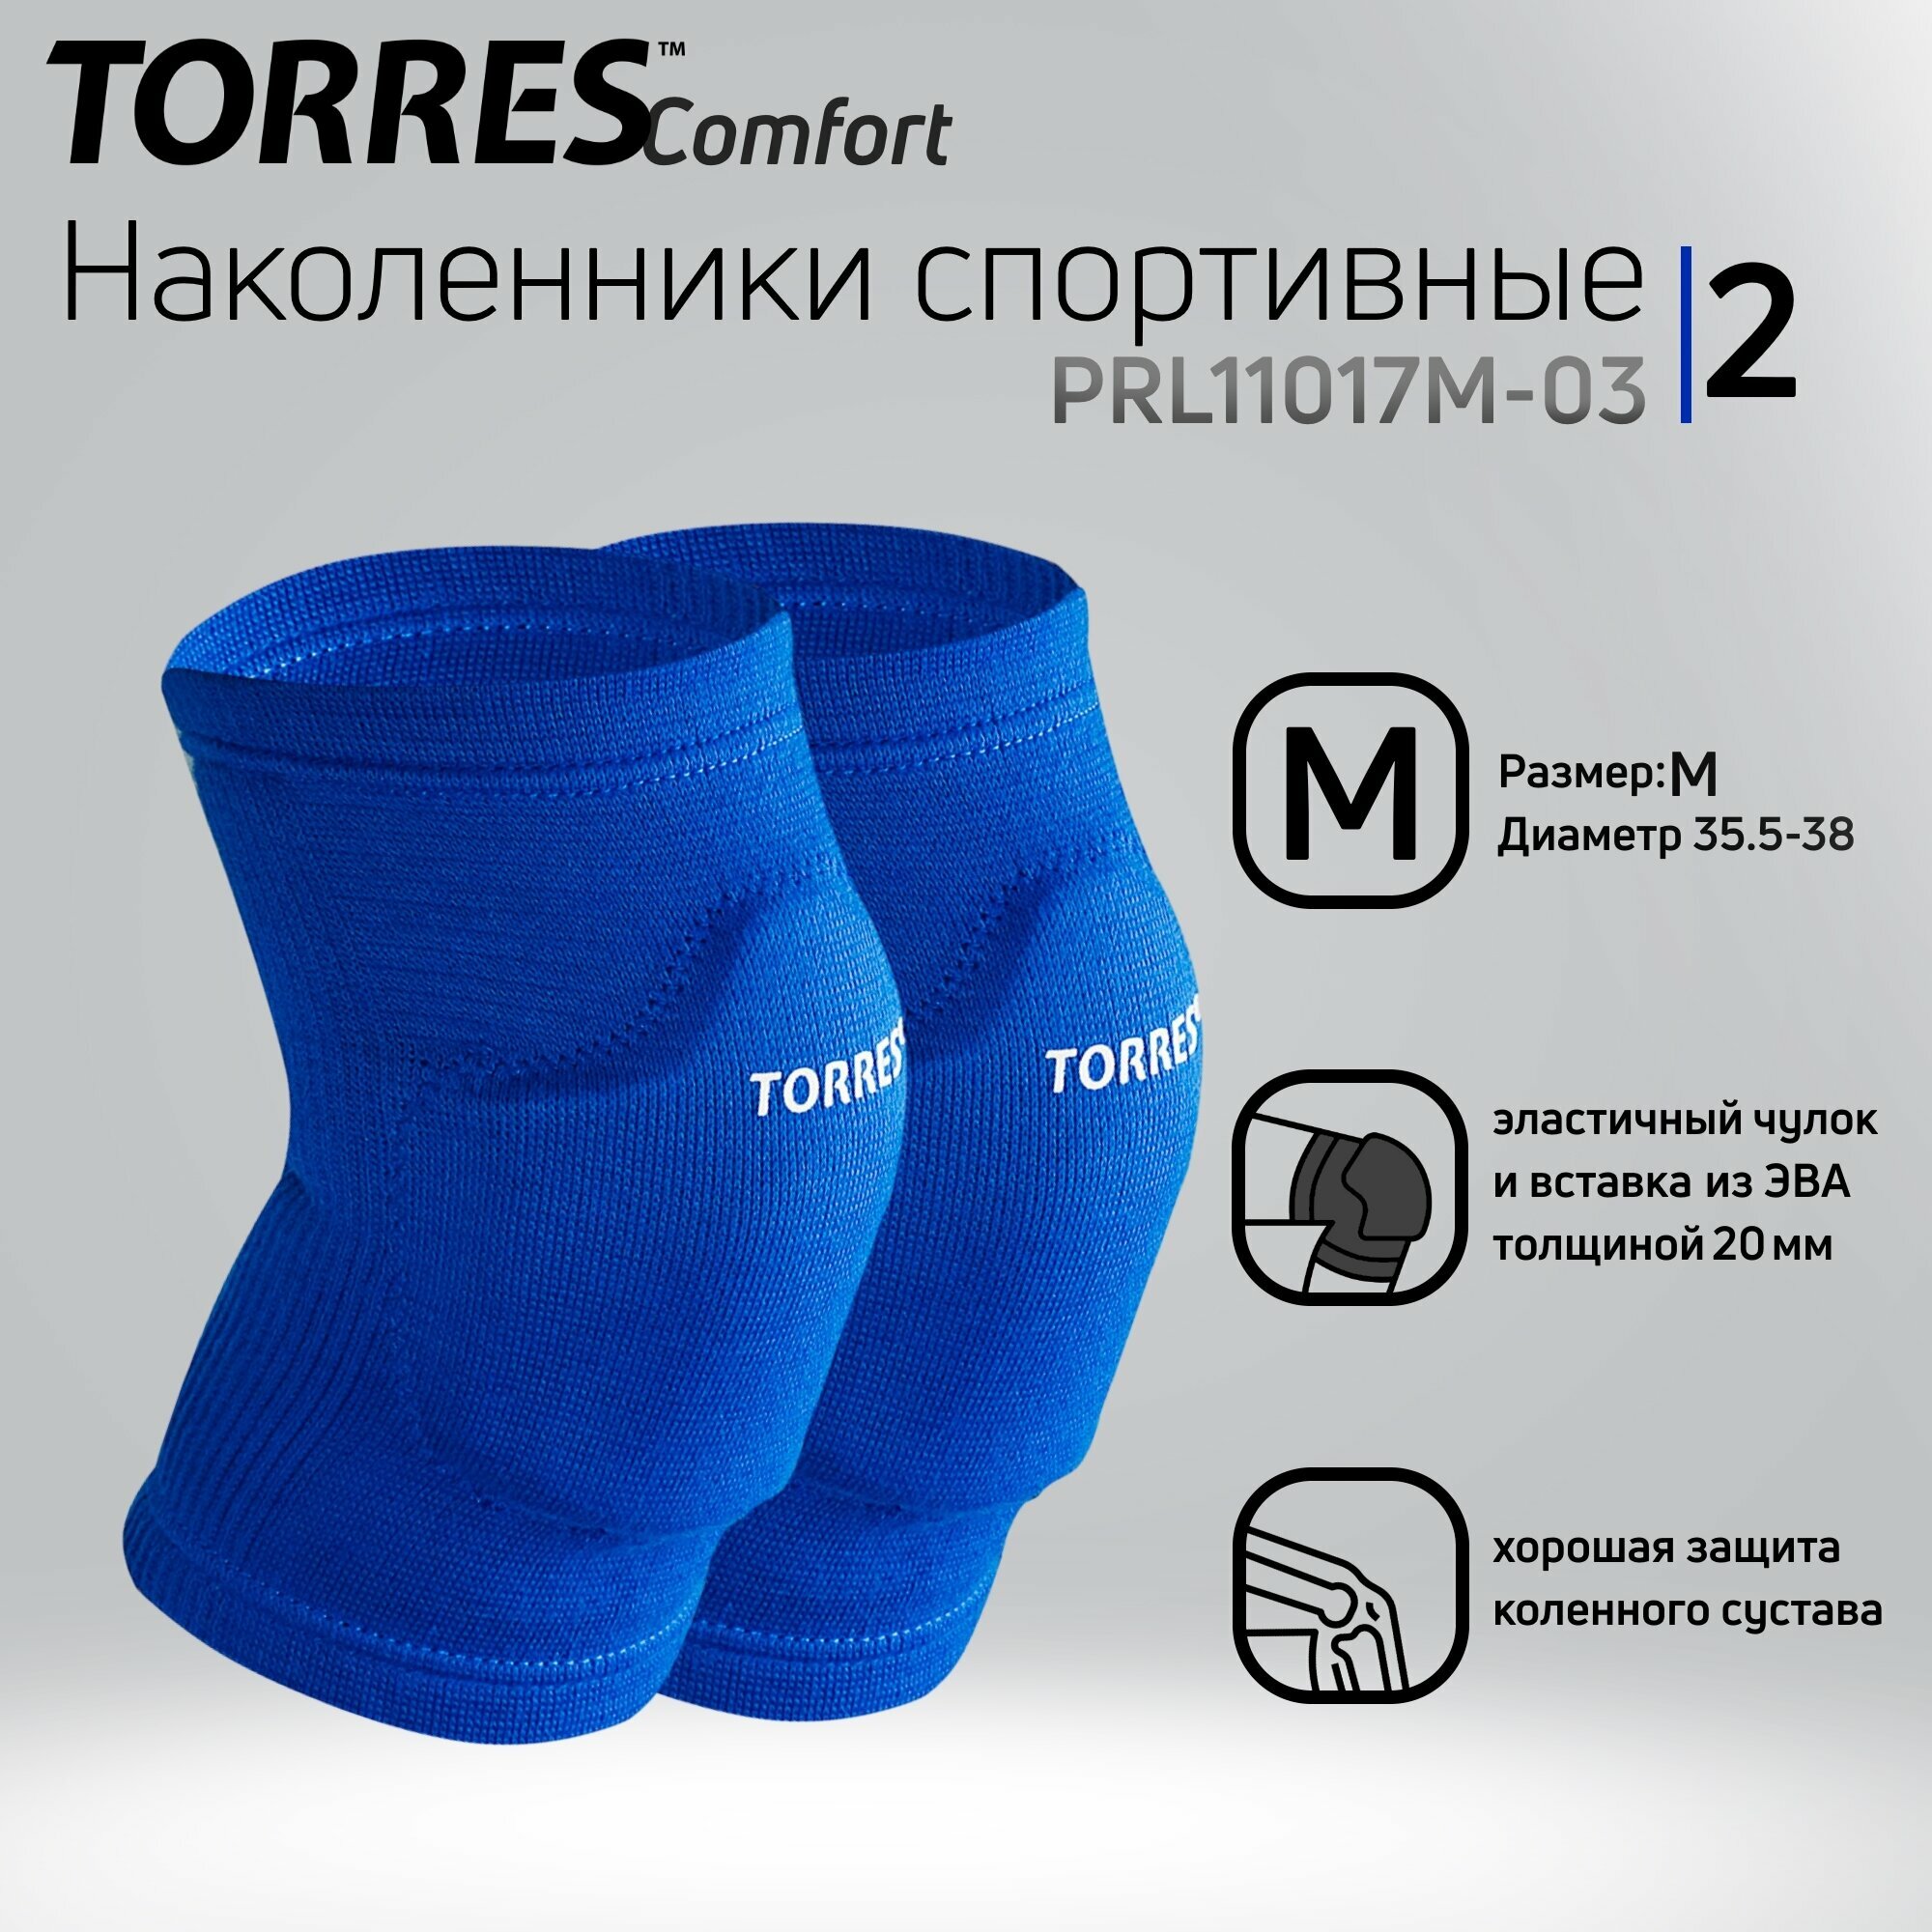 Наколенники спортивные Torres Comfort арт.PRL11017M-03 р. M